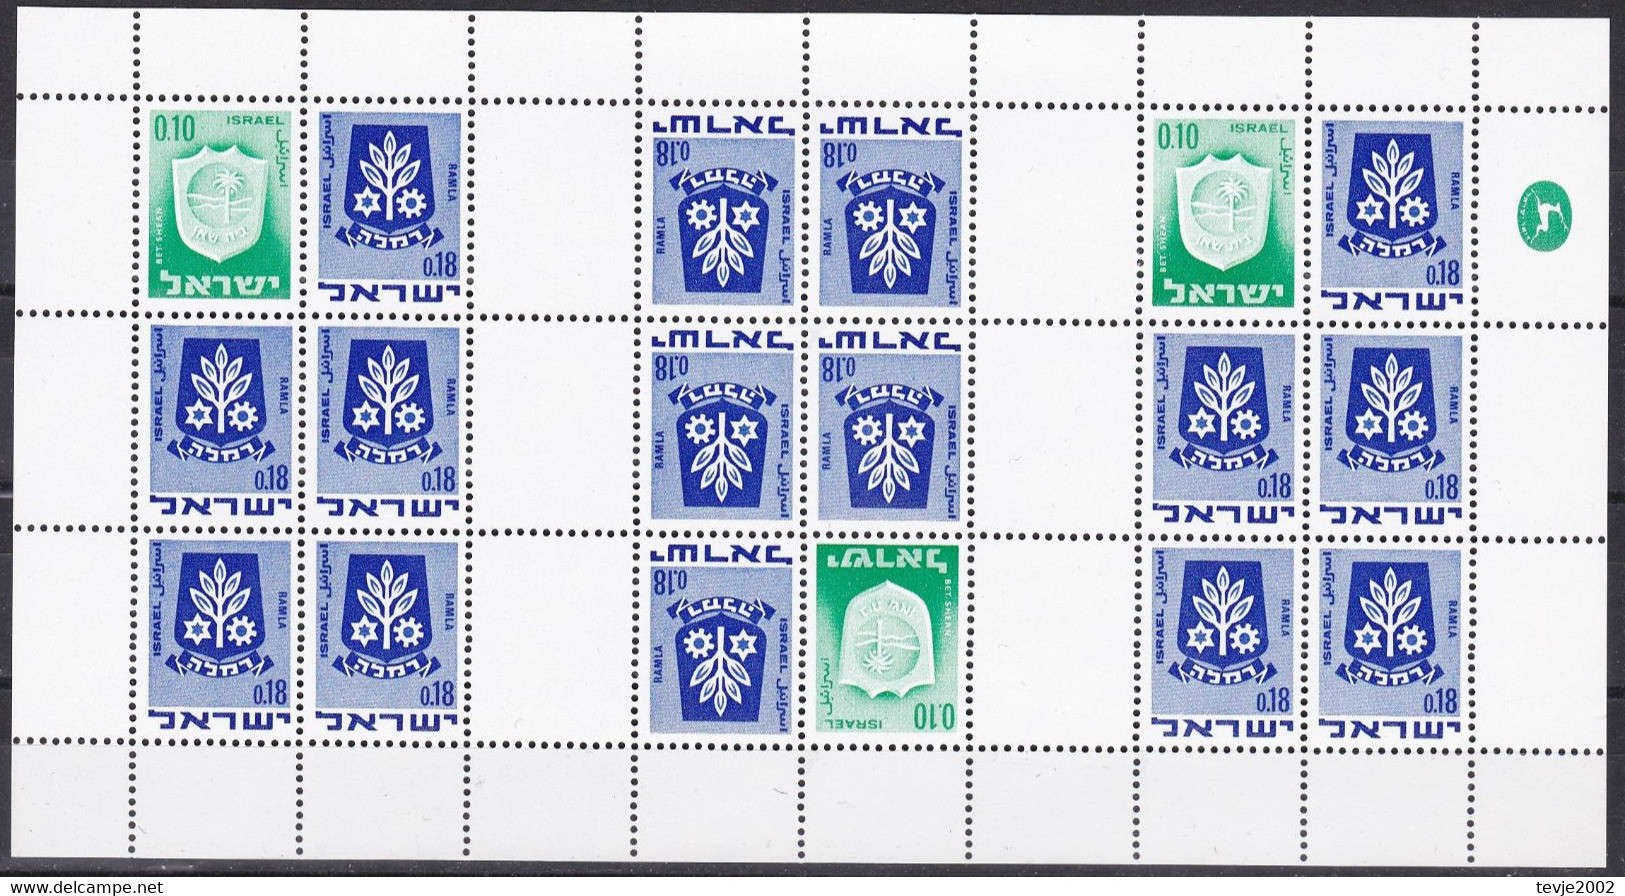 Israel 1973 - Markenheftchenbogen Mi.Nr. 326 + 486 - Postfrisch MNH - Carnets